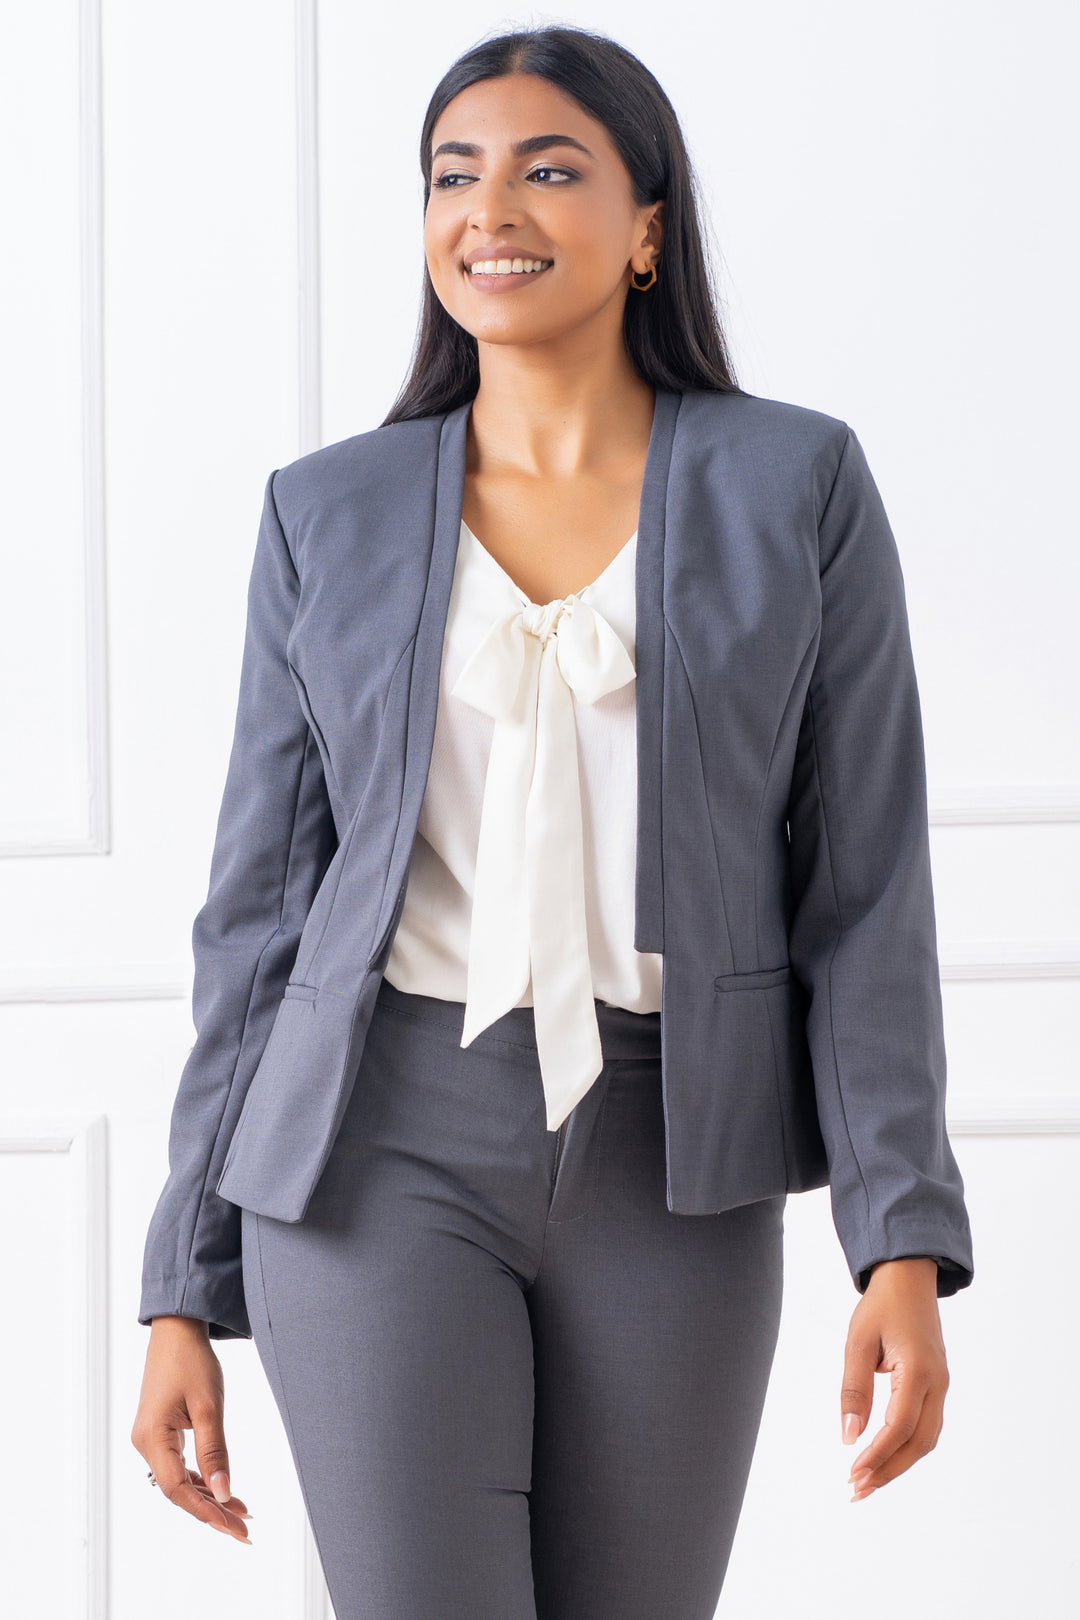 Open Lapel Blazer- Slim Fit, Jacket, Blazer, Long Sleeves, New Arrivals, Office Jackets, Slim Fit, Work Top, workwear - MONDY, Sri Lankan women's clothing office wear party dresses jackets pa